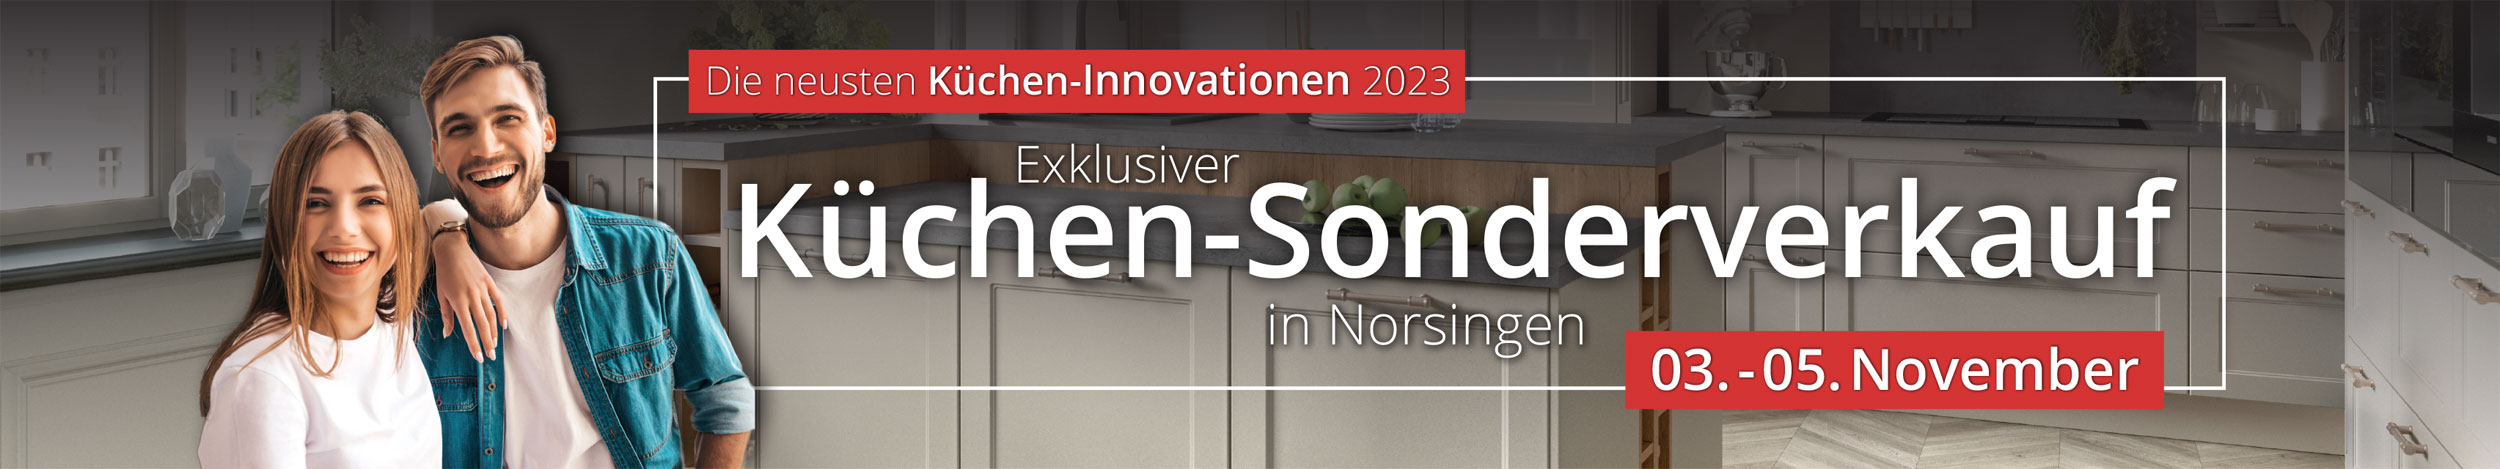 Exklusiver Küchen-Sonderverkauf mit den neuesten Küchen-Innovationen in Norsingen